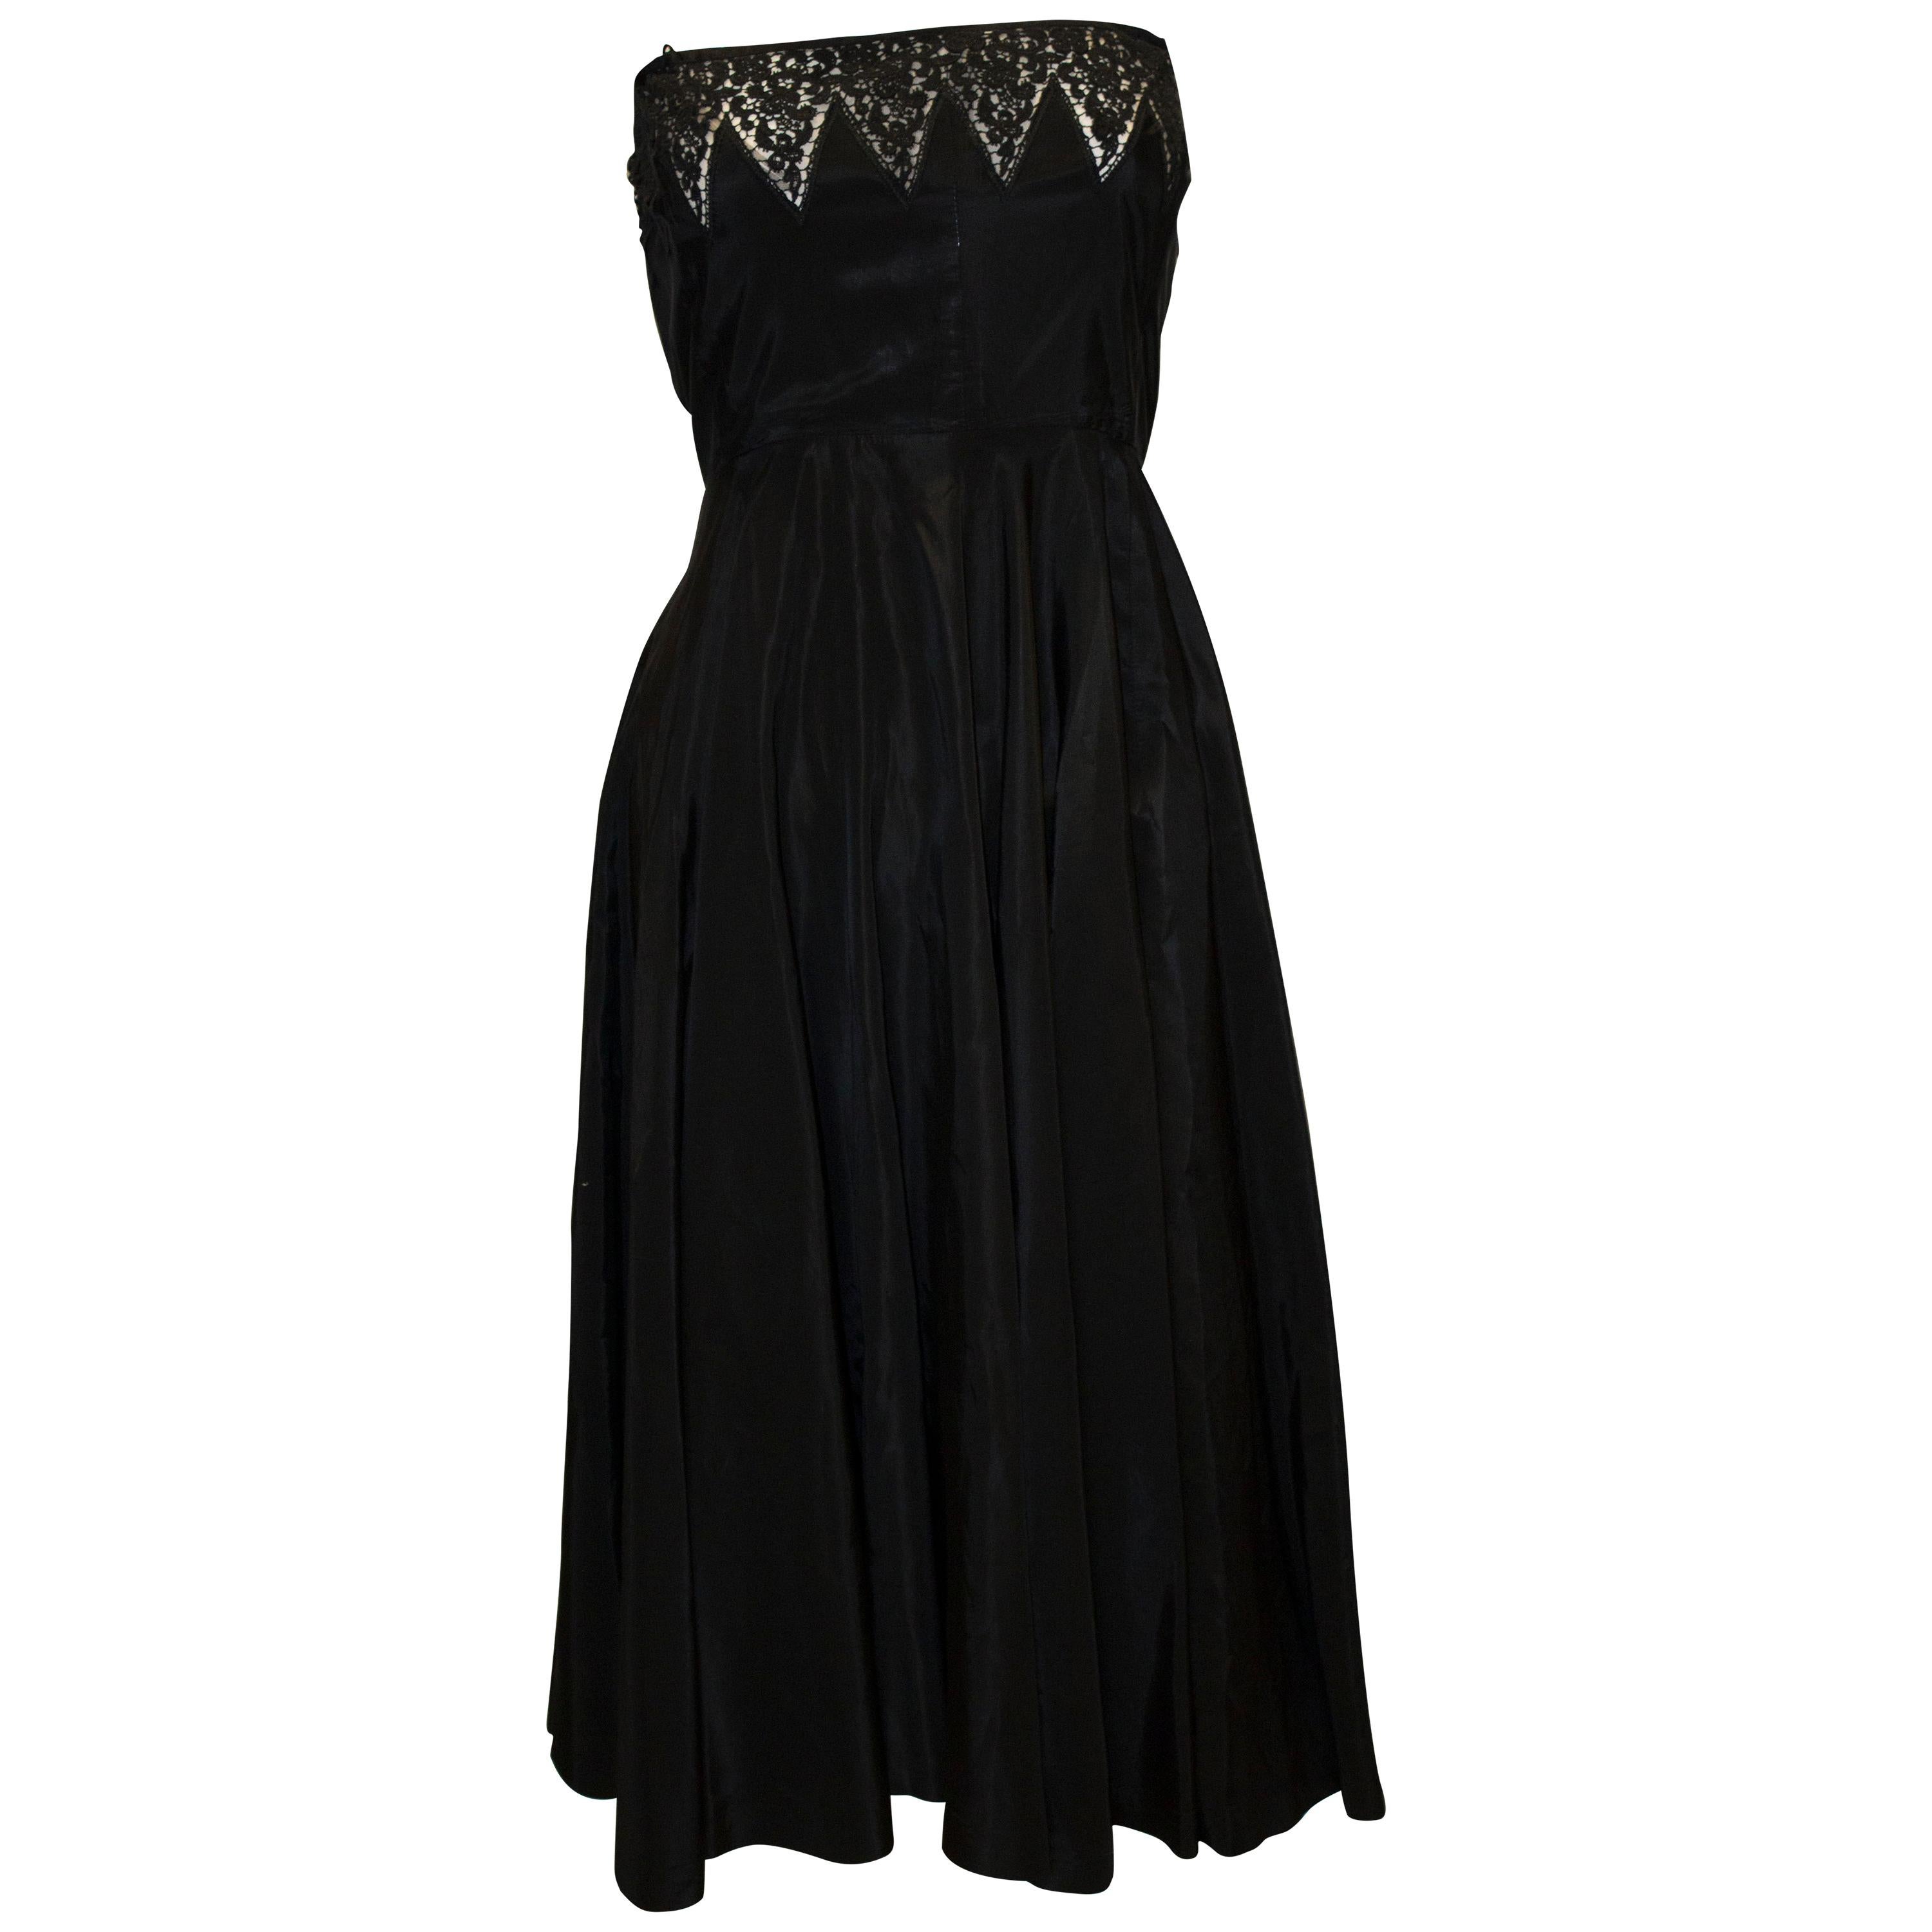 Black Vintage 1950s Cocktail Dress For Sale